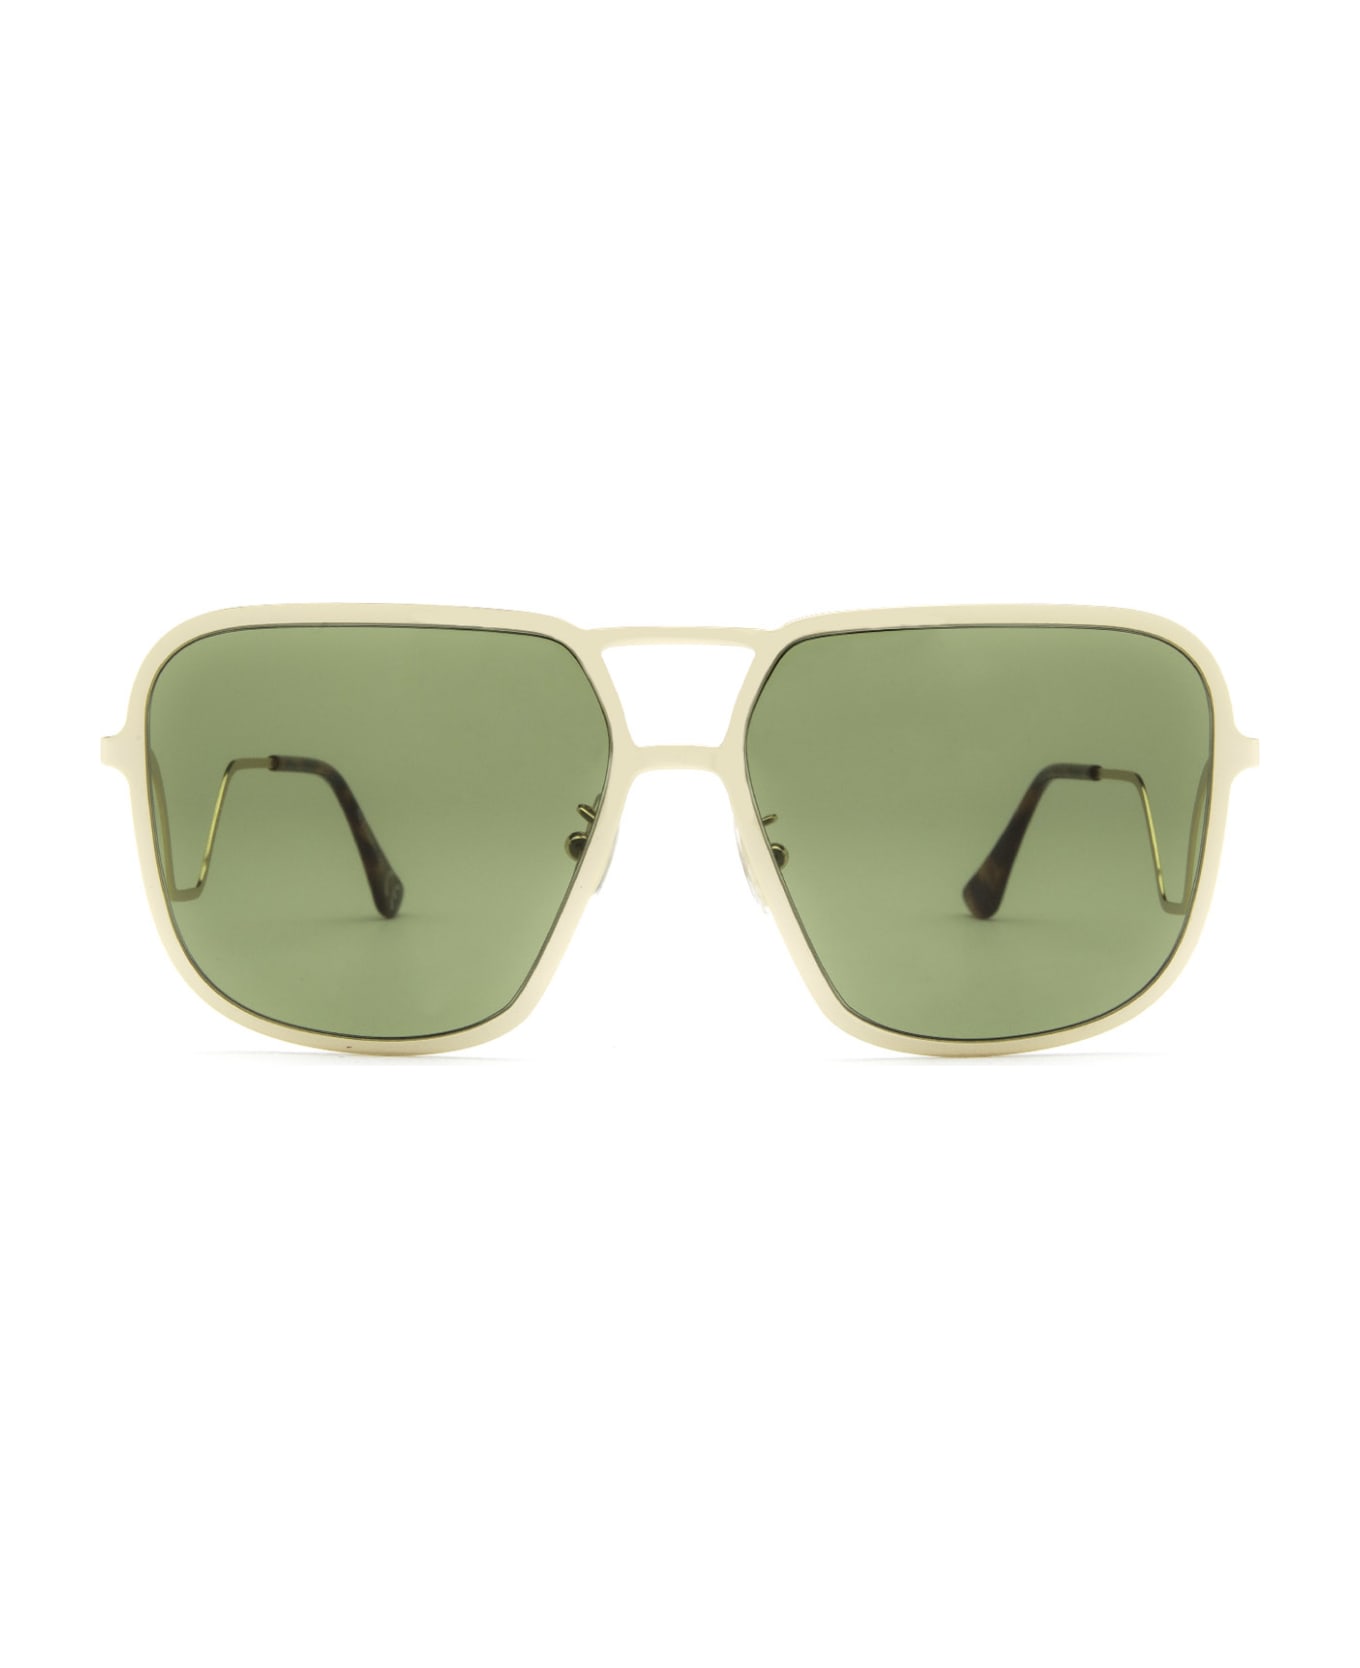 Marni Eyewear Ha Long Bay Green Sunglasses - Green